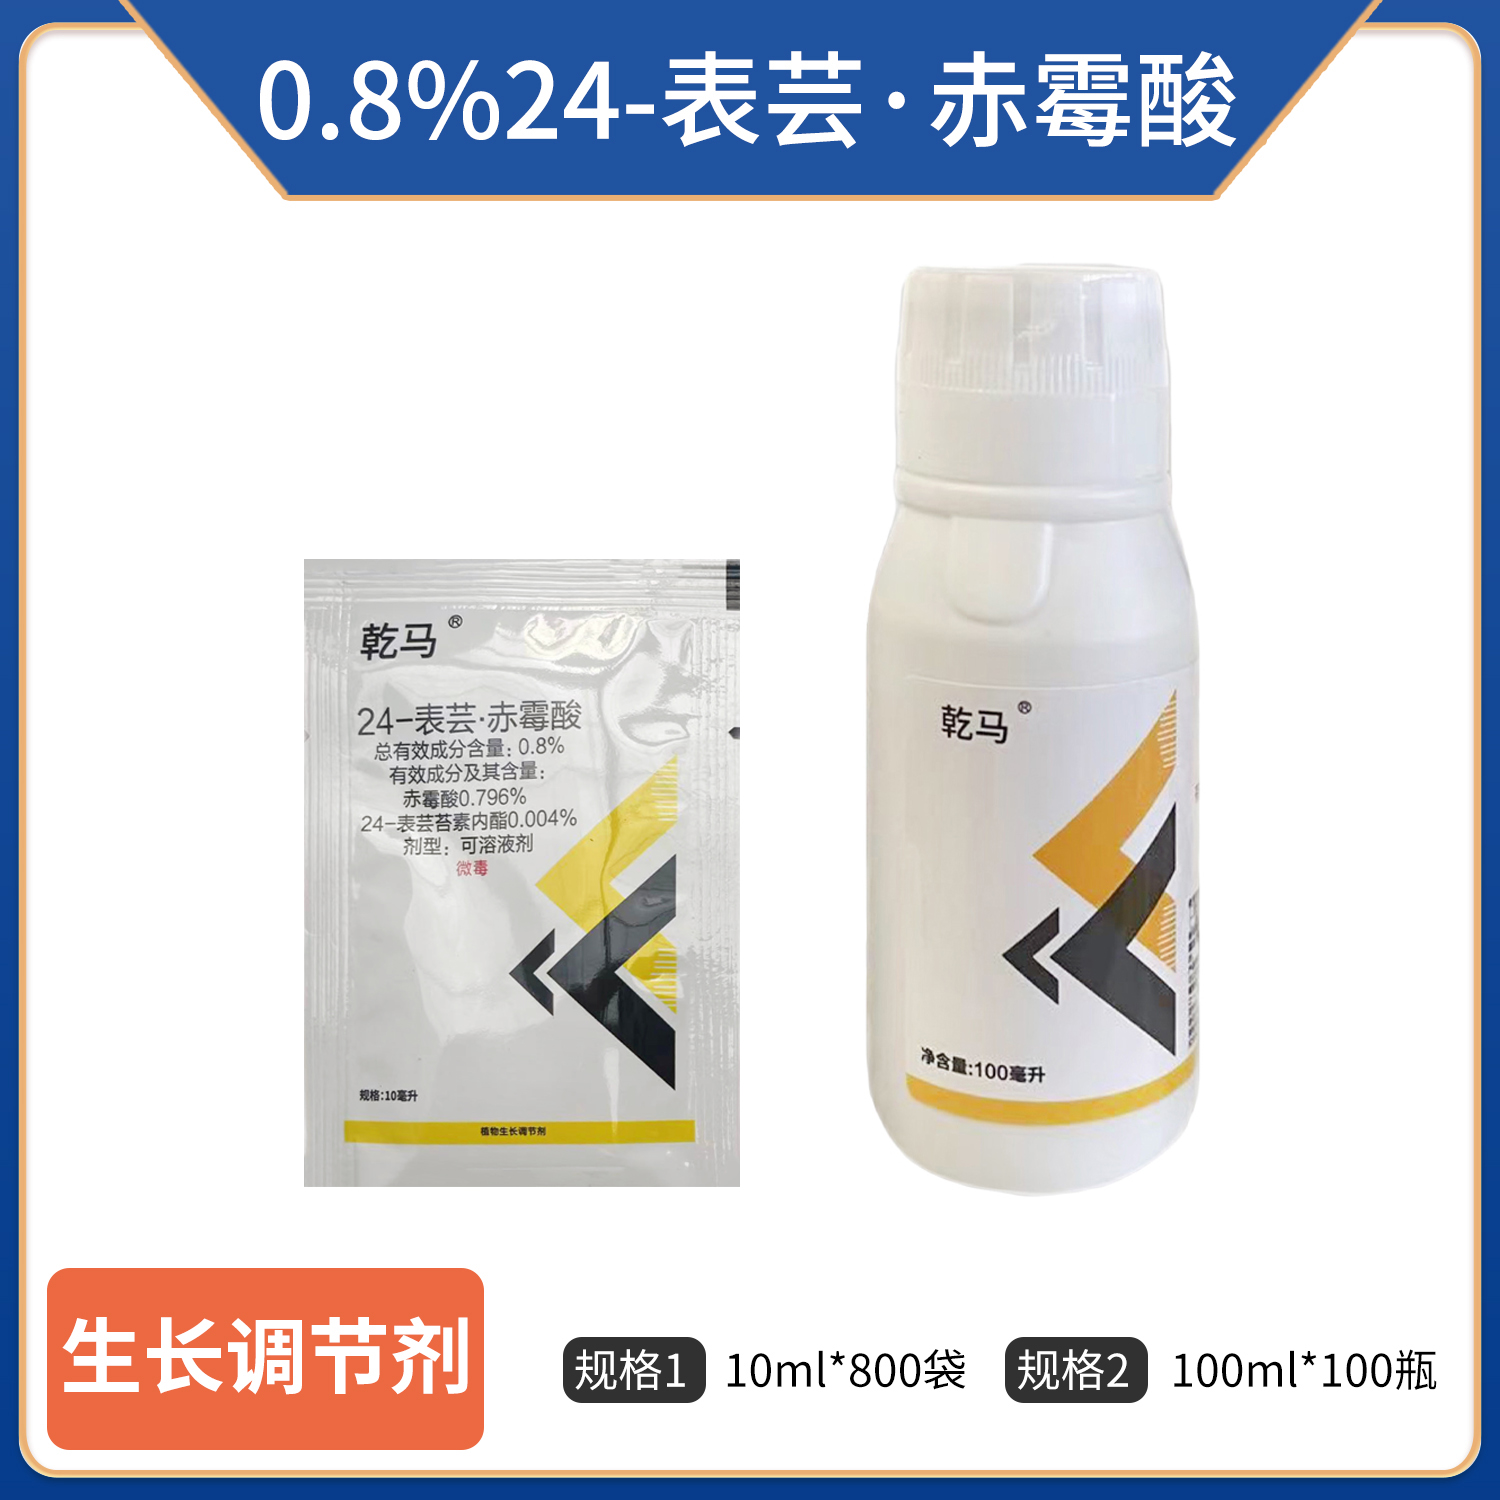 乾马-0.8%24-表芸·赤霉酸